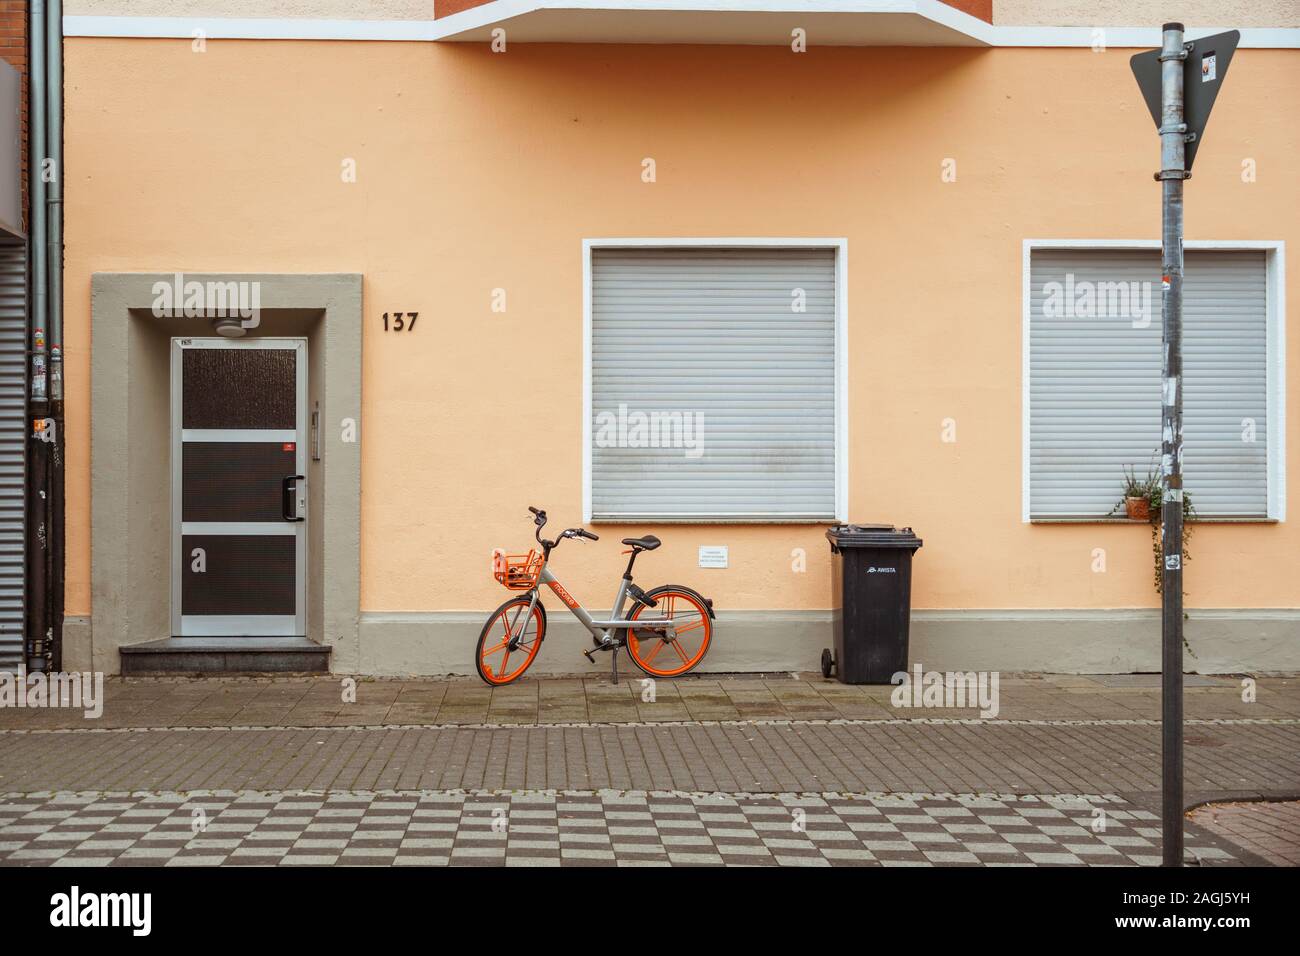 Location en stationnement sur rue. Un vélo de ville à Dusseldorf. Vélo urbain stationné sans que personne sur l'rue. Mode de transport écologique vélo dans Banque D'Images